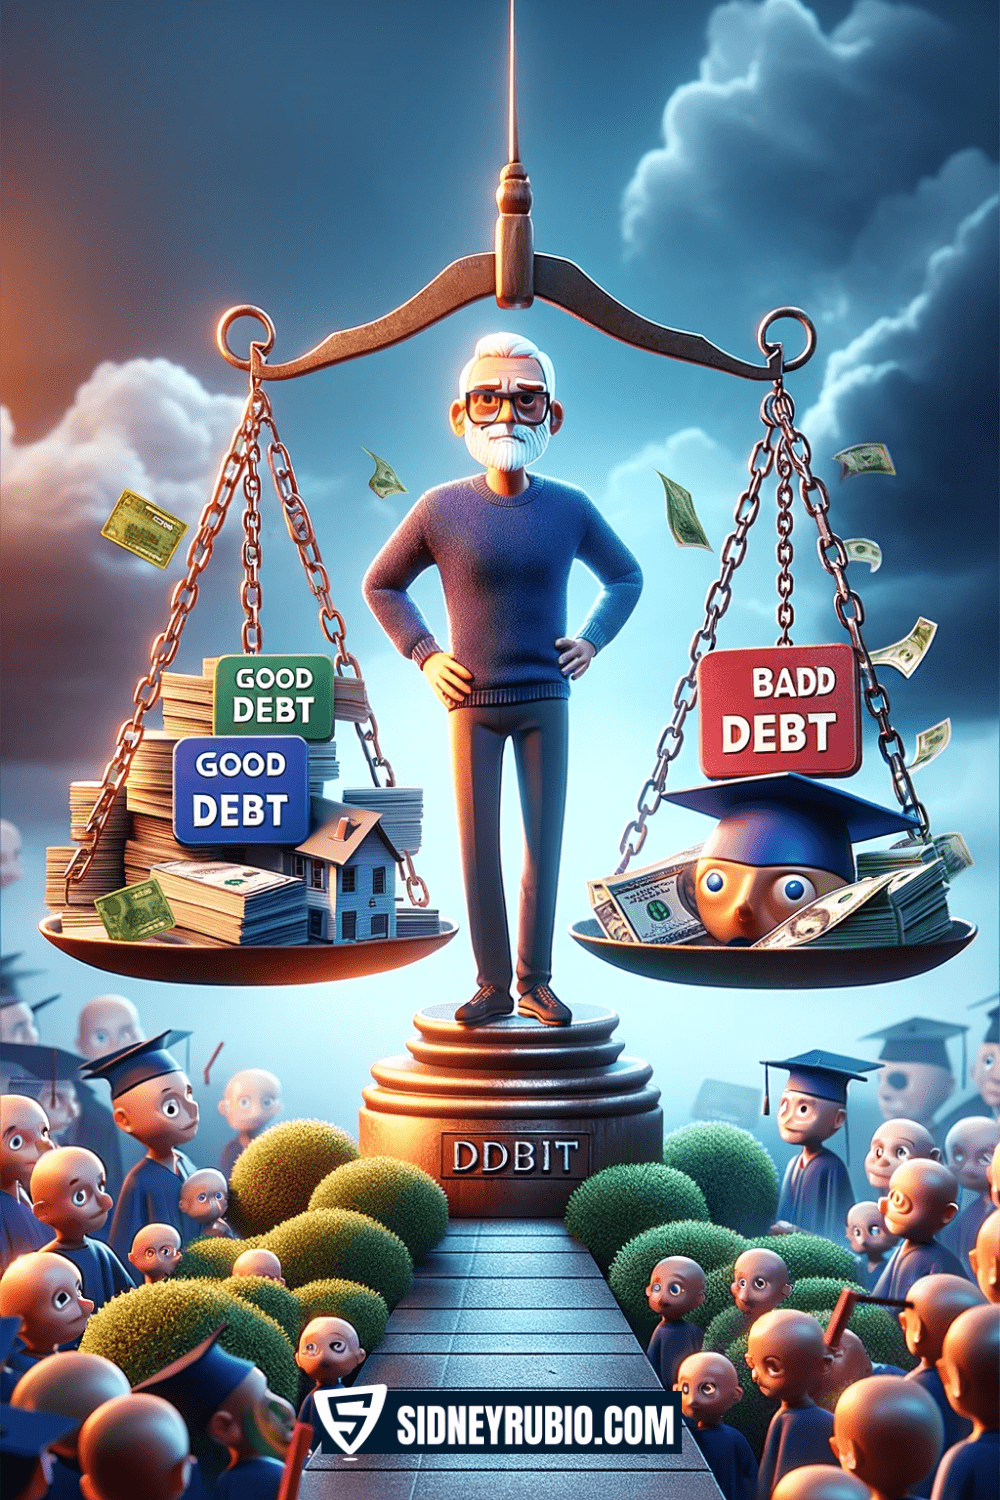 Descubre las claves de la deuda inteligente y evita - sidneyrubio.com